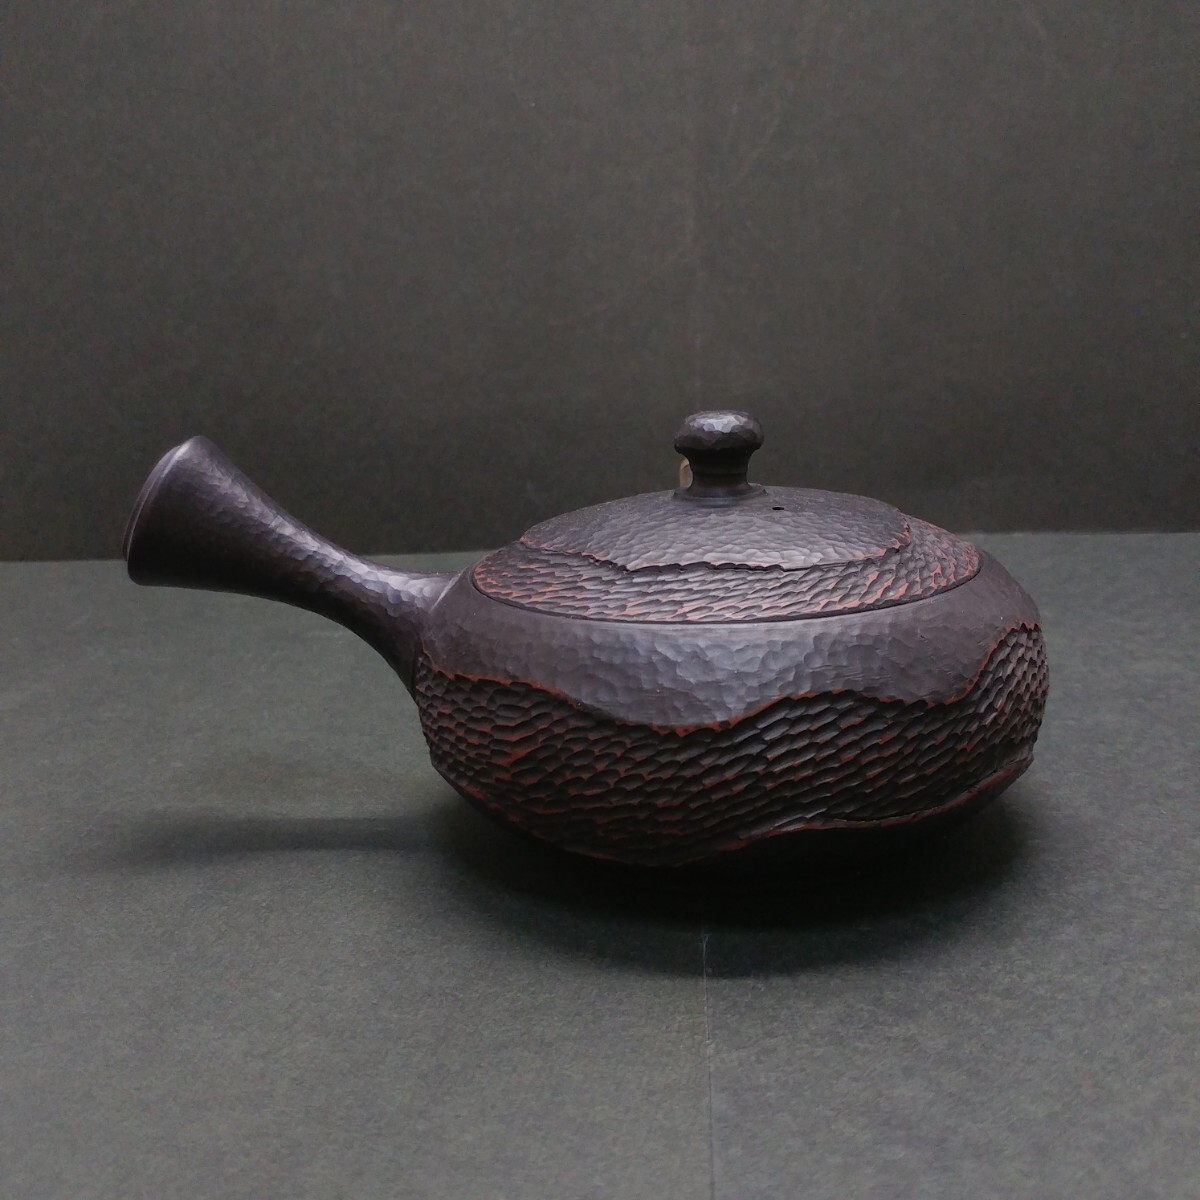  Tokoname . искусный мастер . рисовое поле .. чёрный грязь заварной чайник чайная посуда старый изобразительное искусство . чайная посуда 